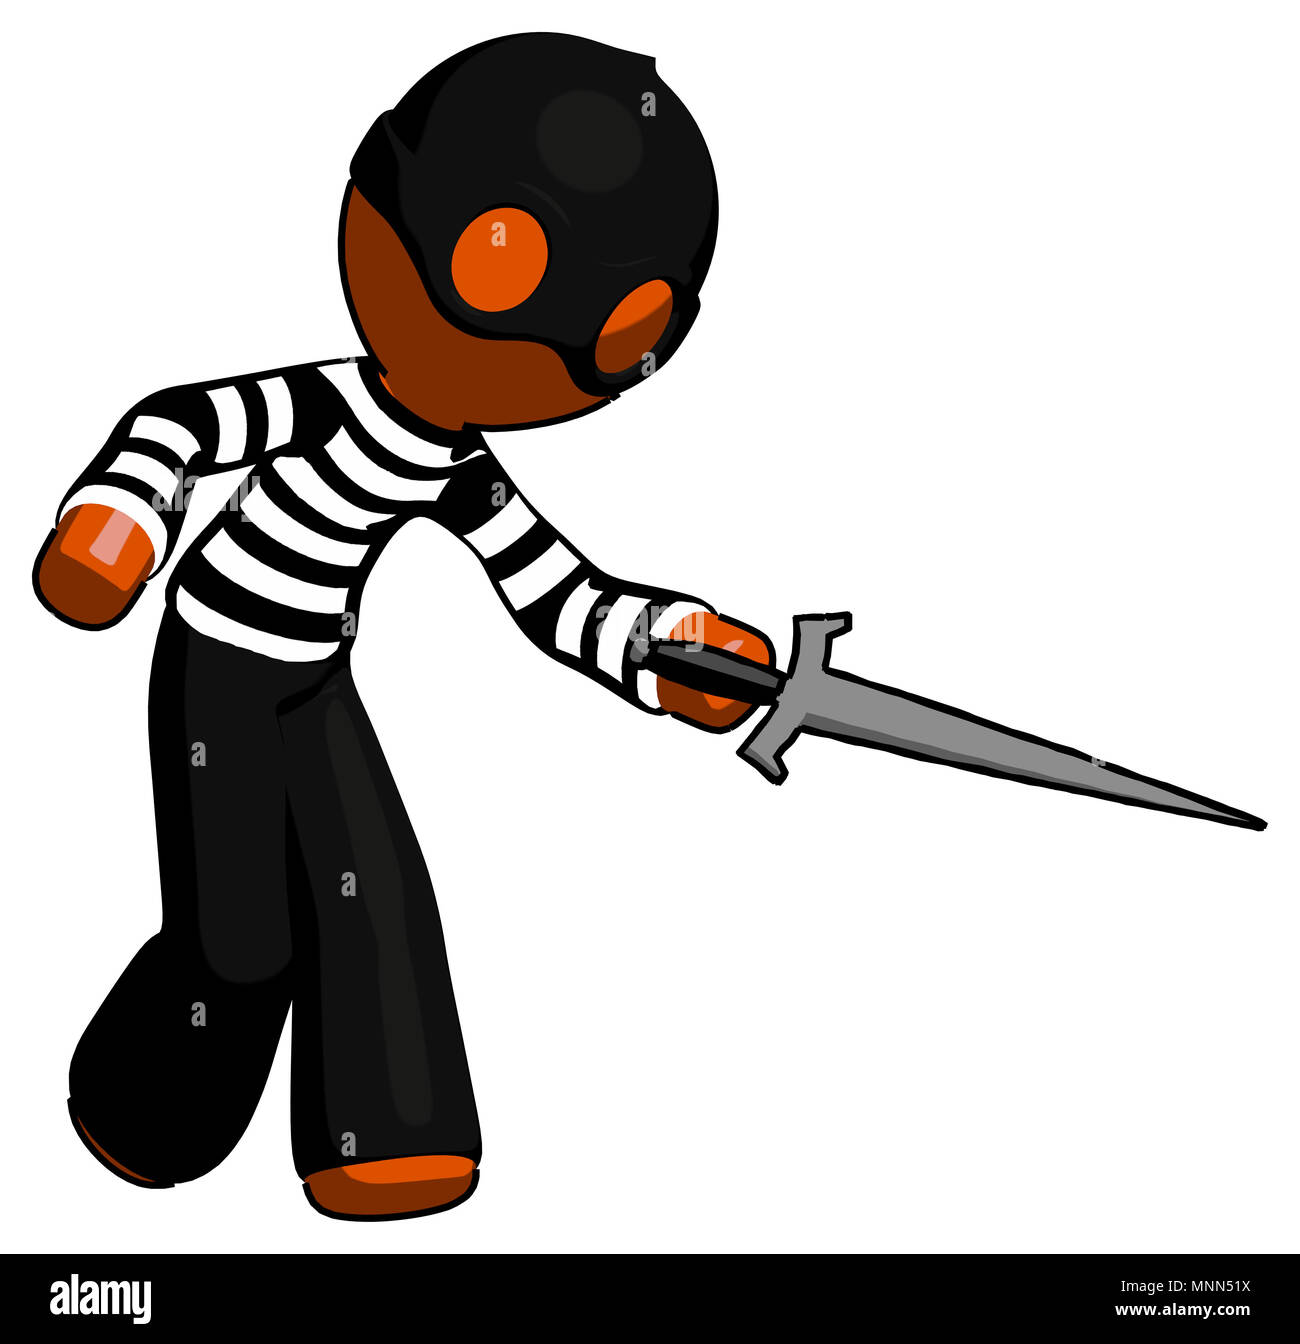 Orange thief man sword pose stabbing or jabbing. Stock Photo